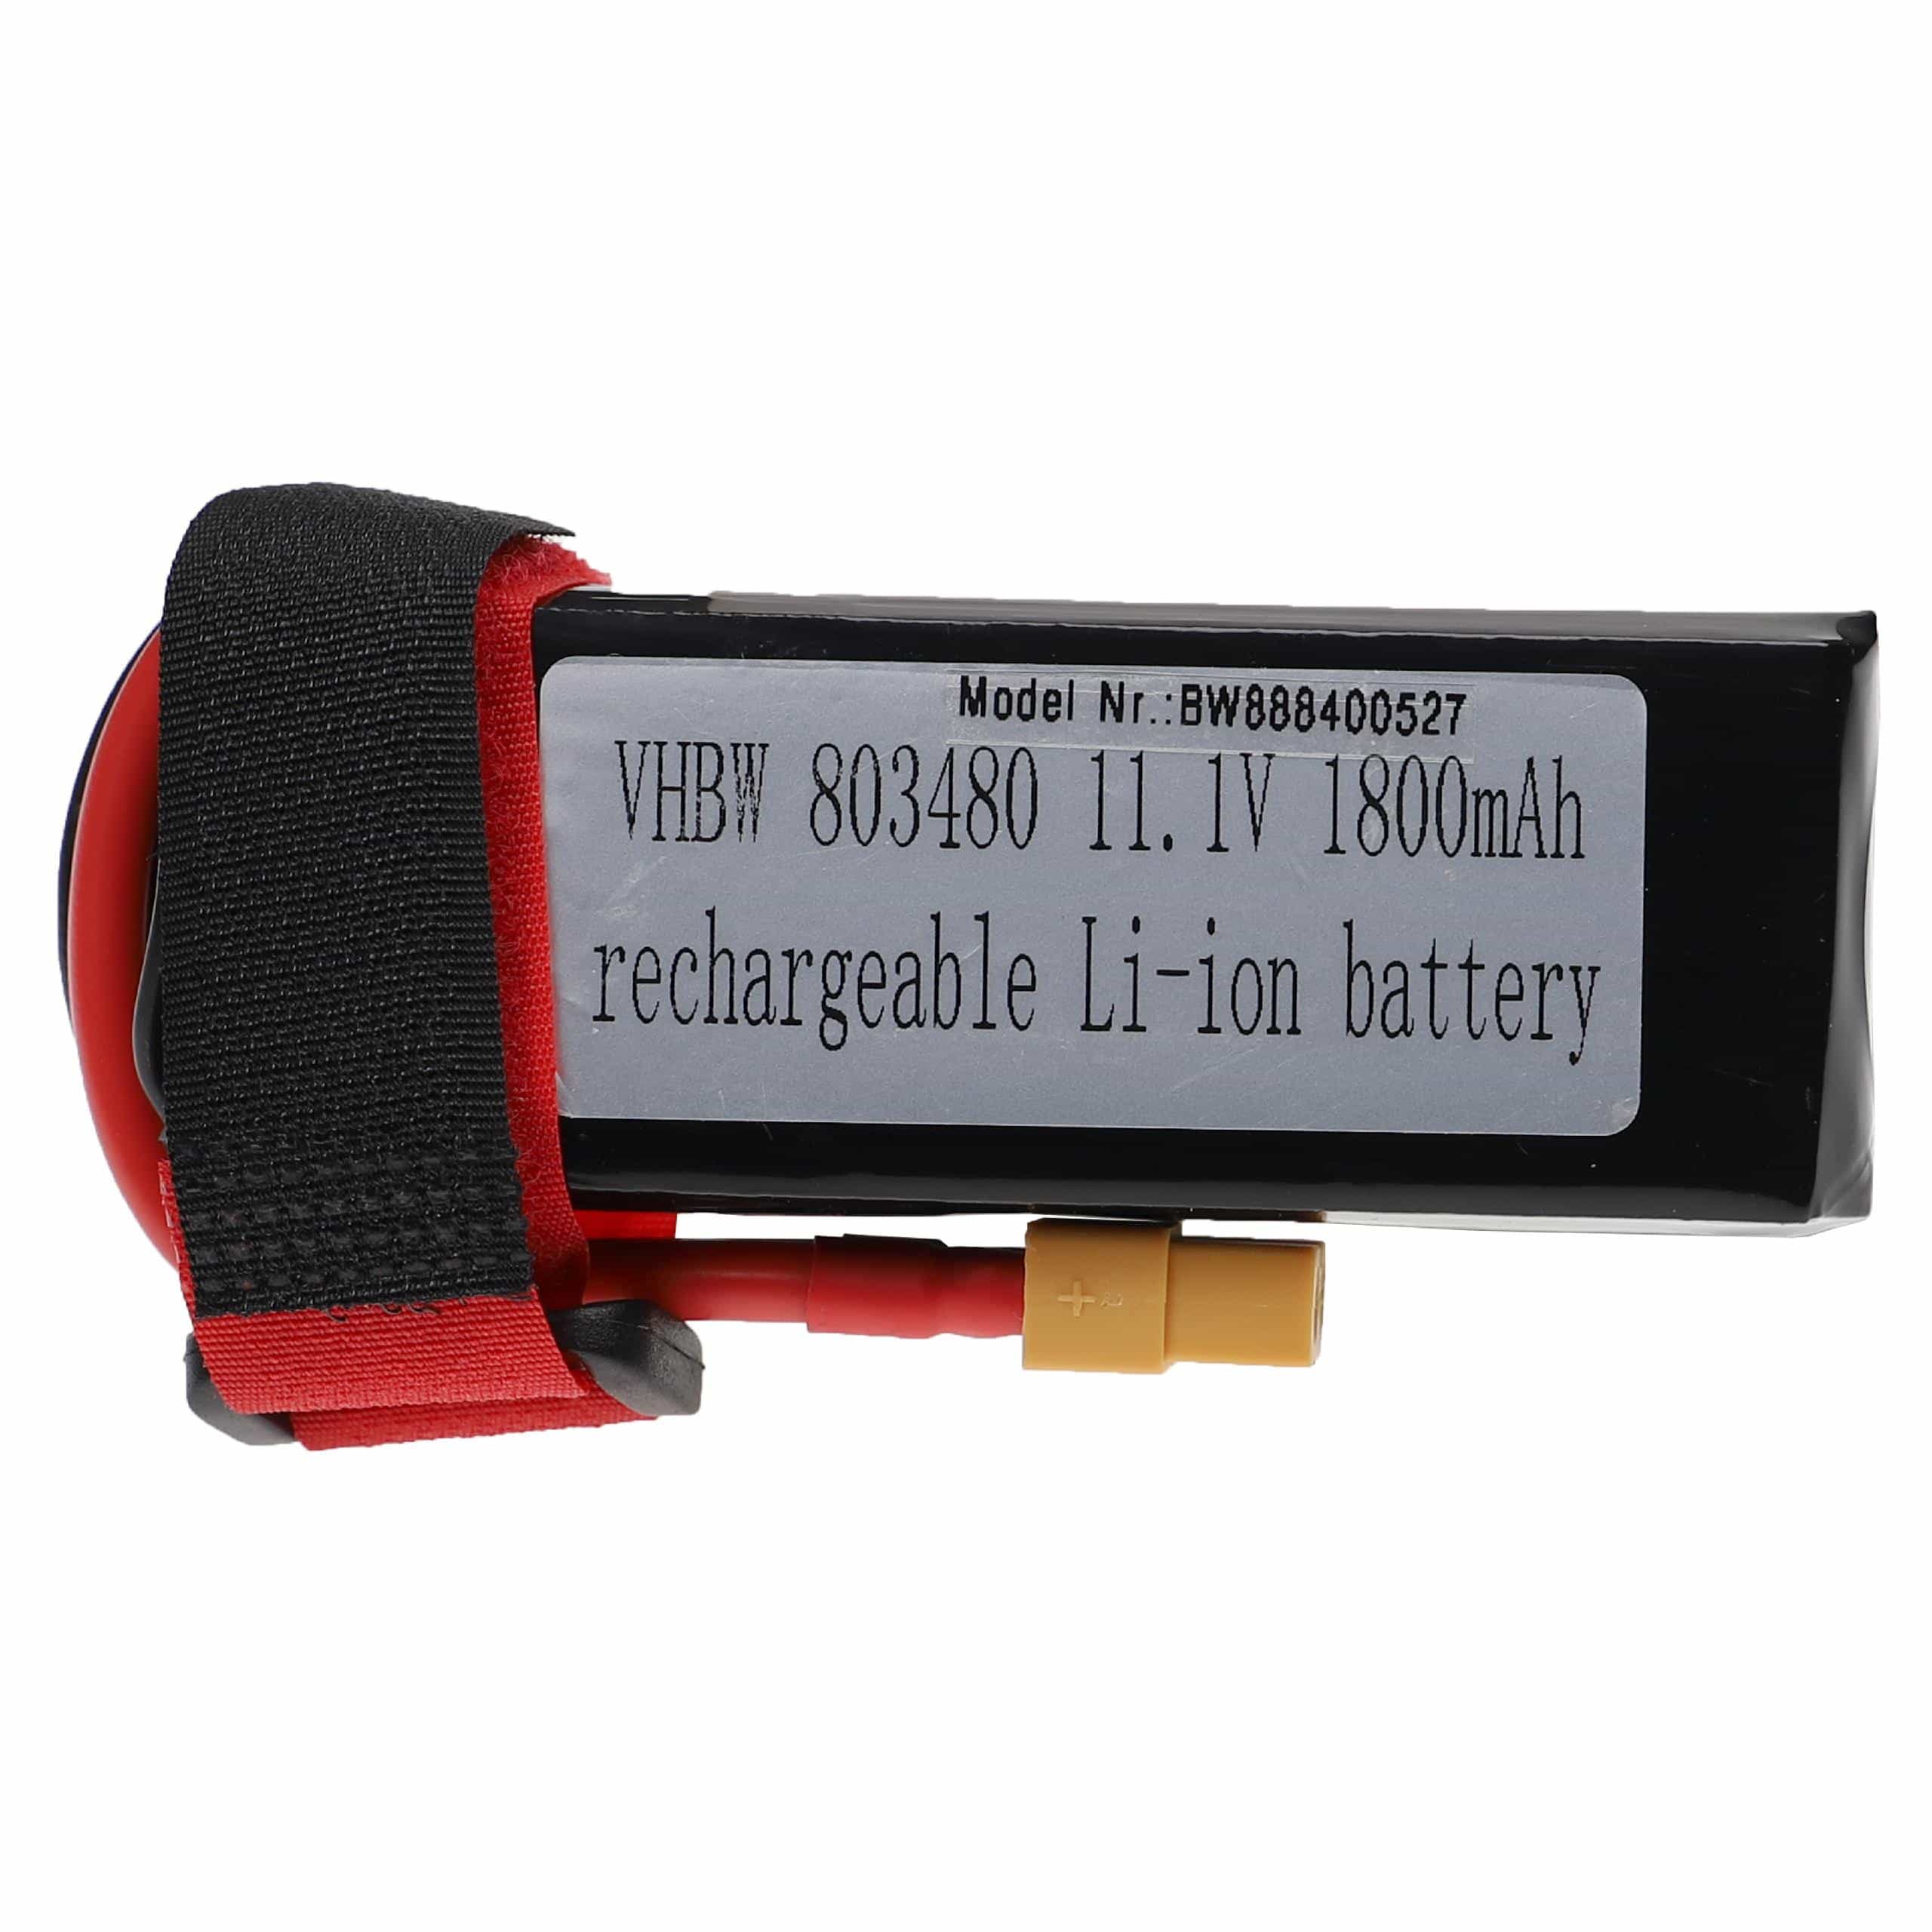 Batería para dispositivos modelismo - 1800 mAh 11,1 V Li-poli, XT60